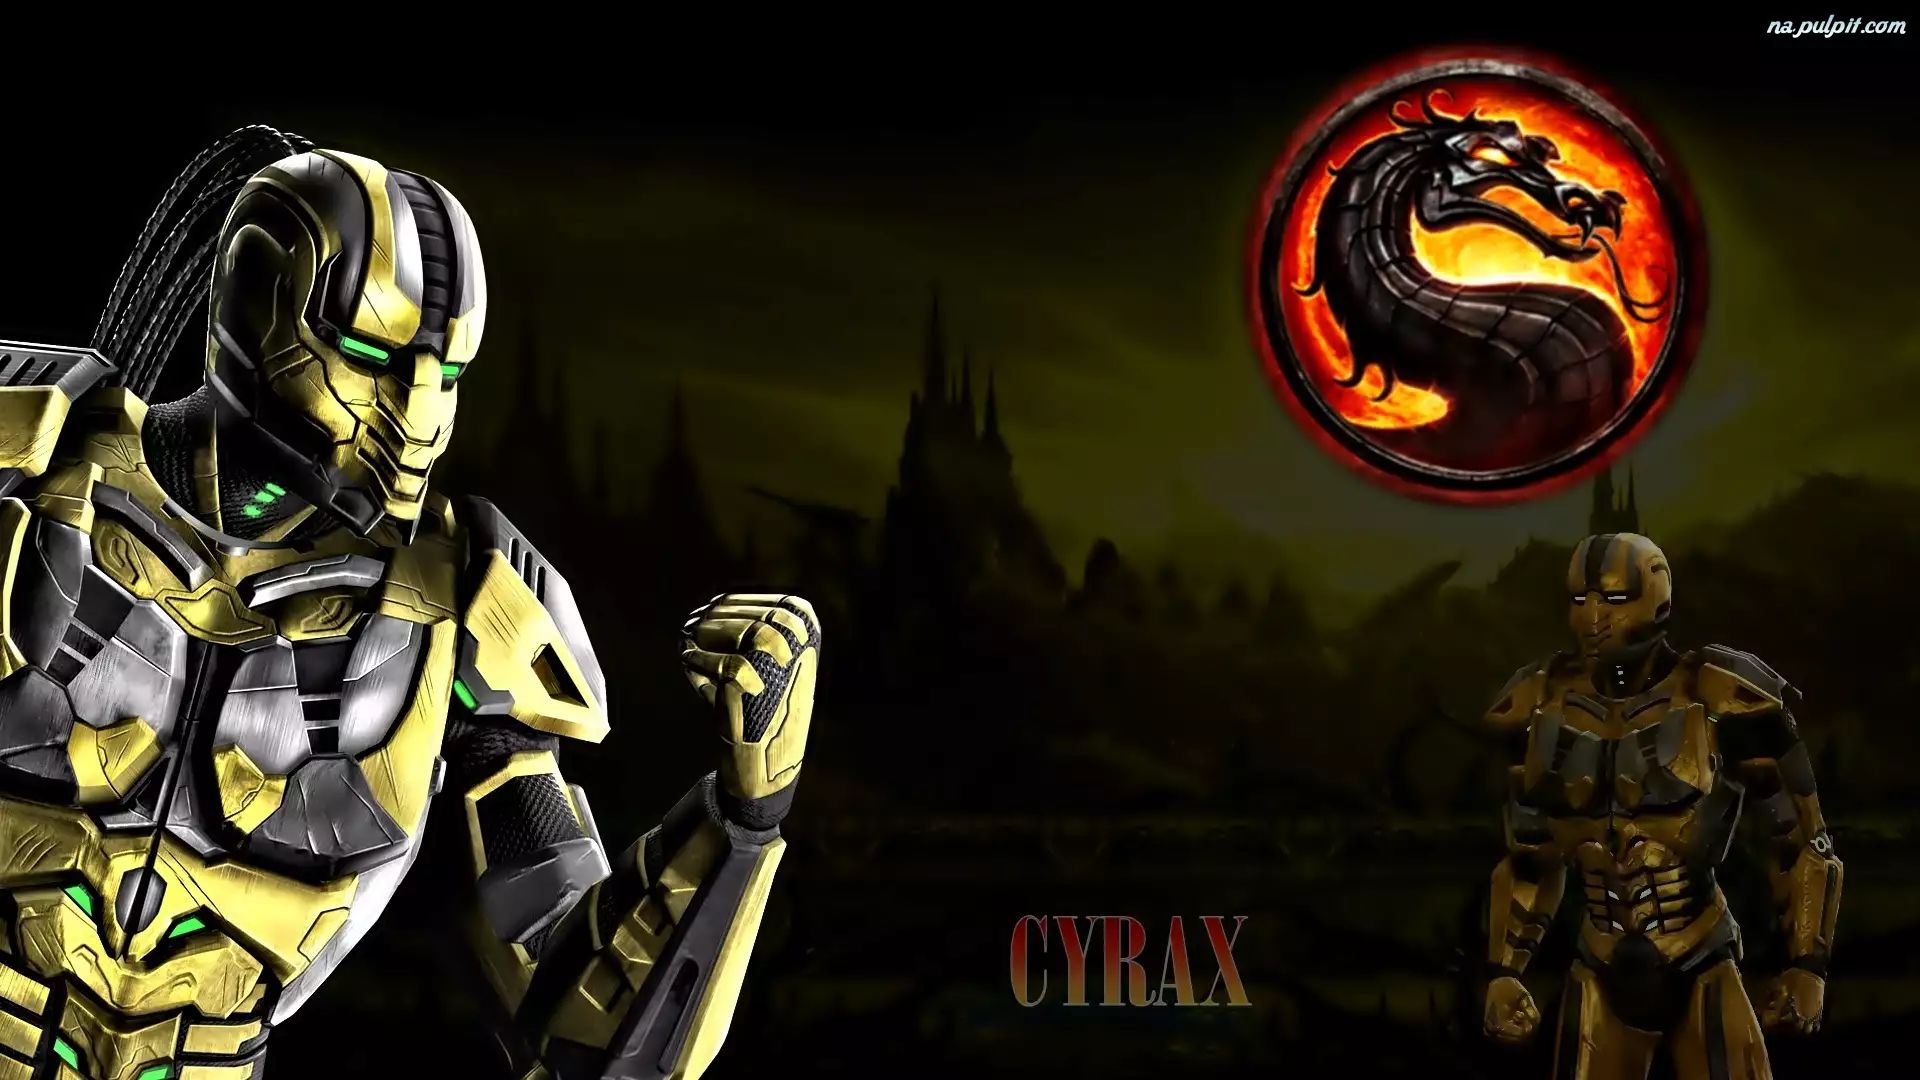 Cyrax, Mortal Kombat